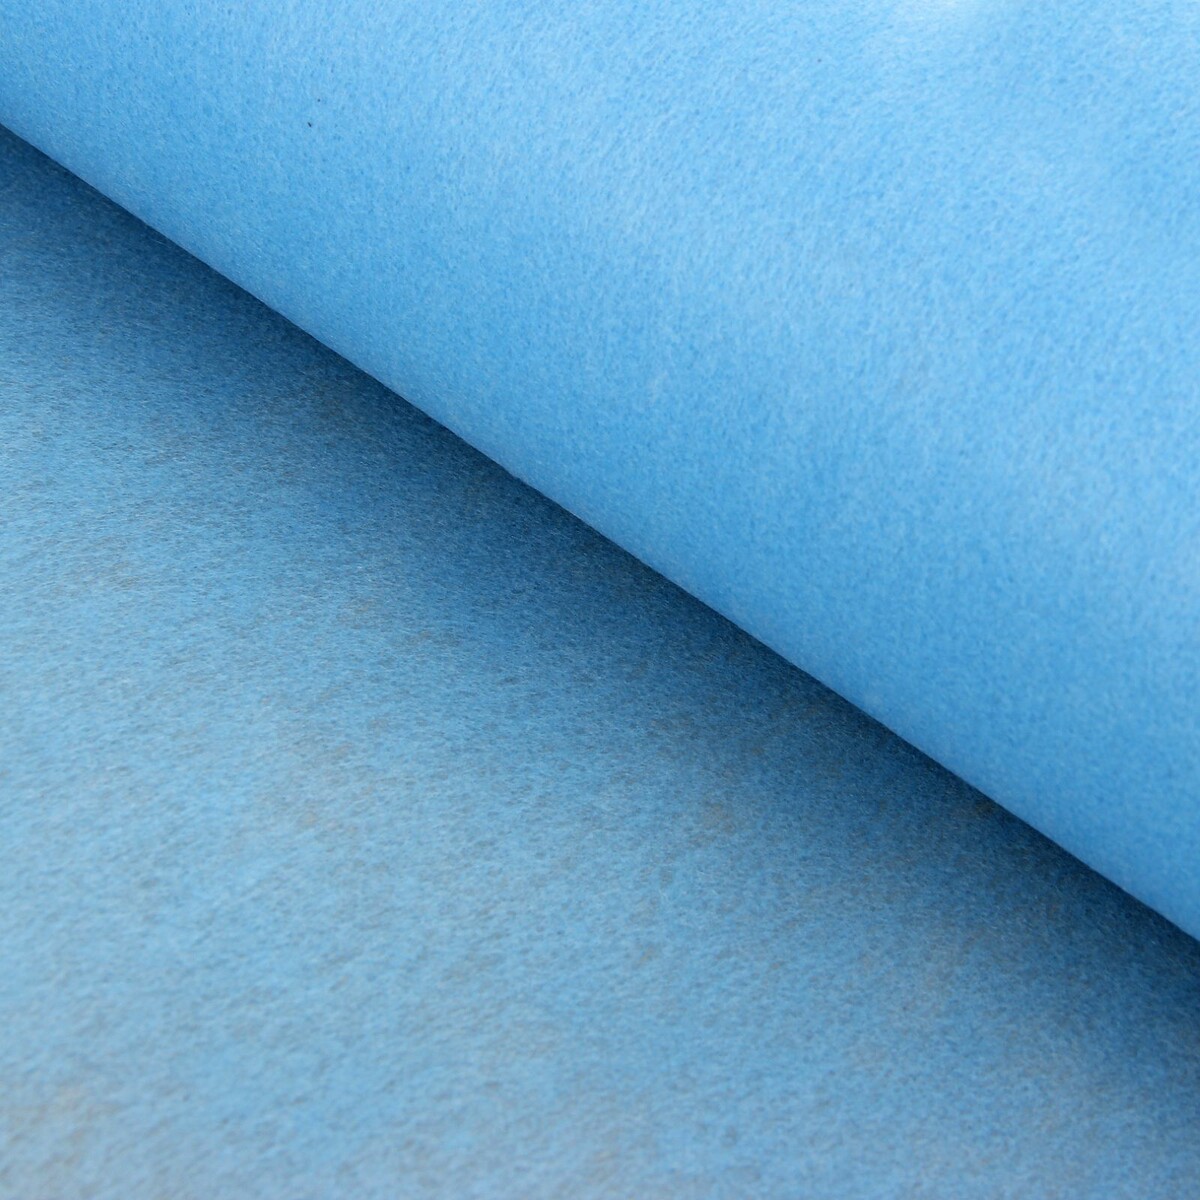 Фетр для упаковок и поделок, однотонный, голубой, двусторонний, рулон 1шт., 50 см x 15 м фетр для упаковок и поделок однотонный голубой двусторонний рулон 1шт 50 см x 15 м